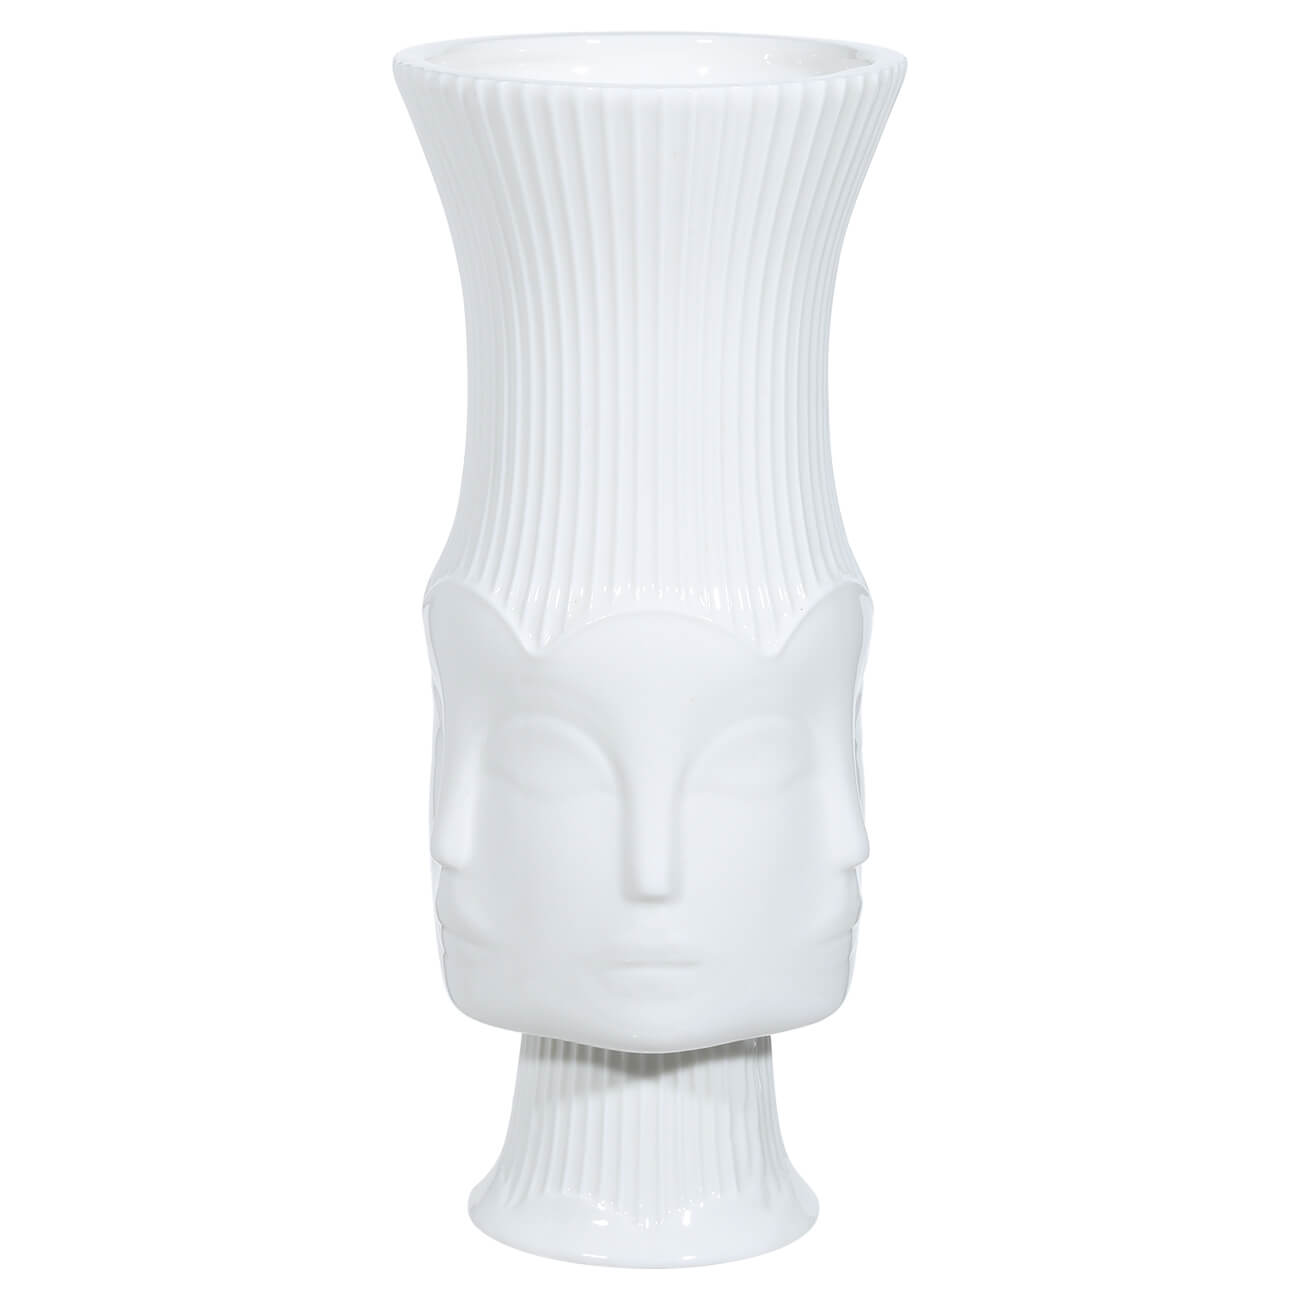 Ваза для цветов, 22 см, декоративная, на ножке, керамика, белая, Лица, Face ваза для ов 37 см декоративная керамика белая мятый эффект crumple